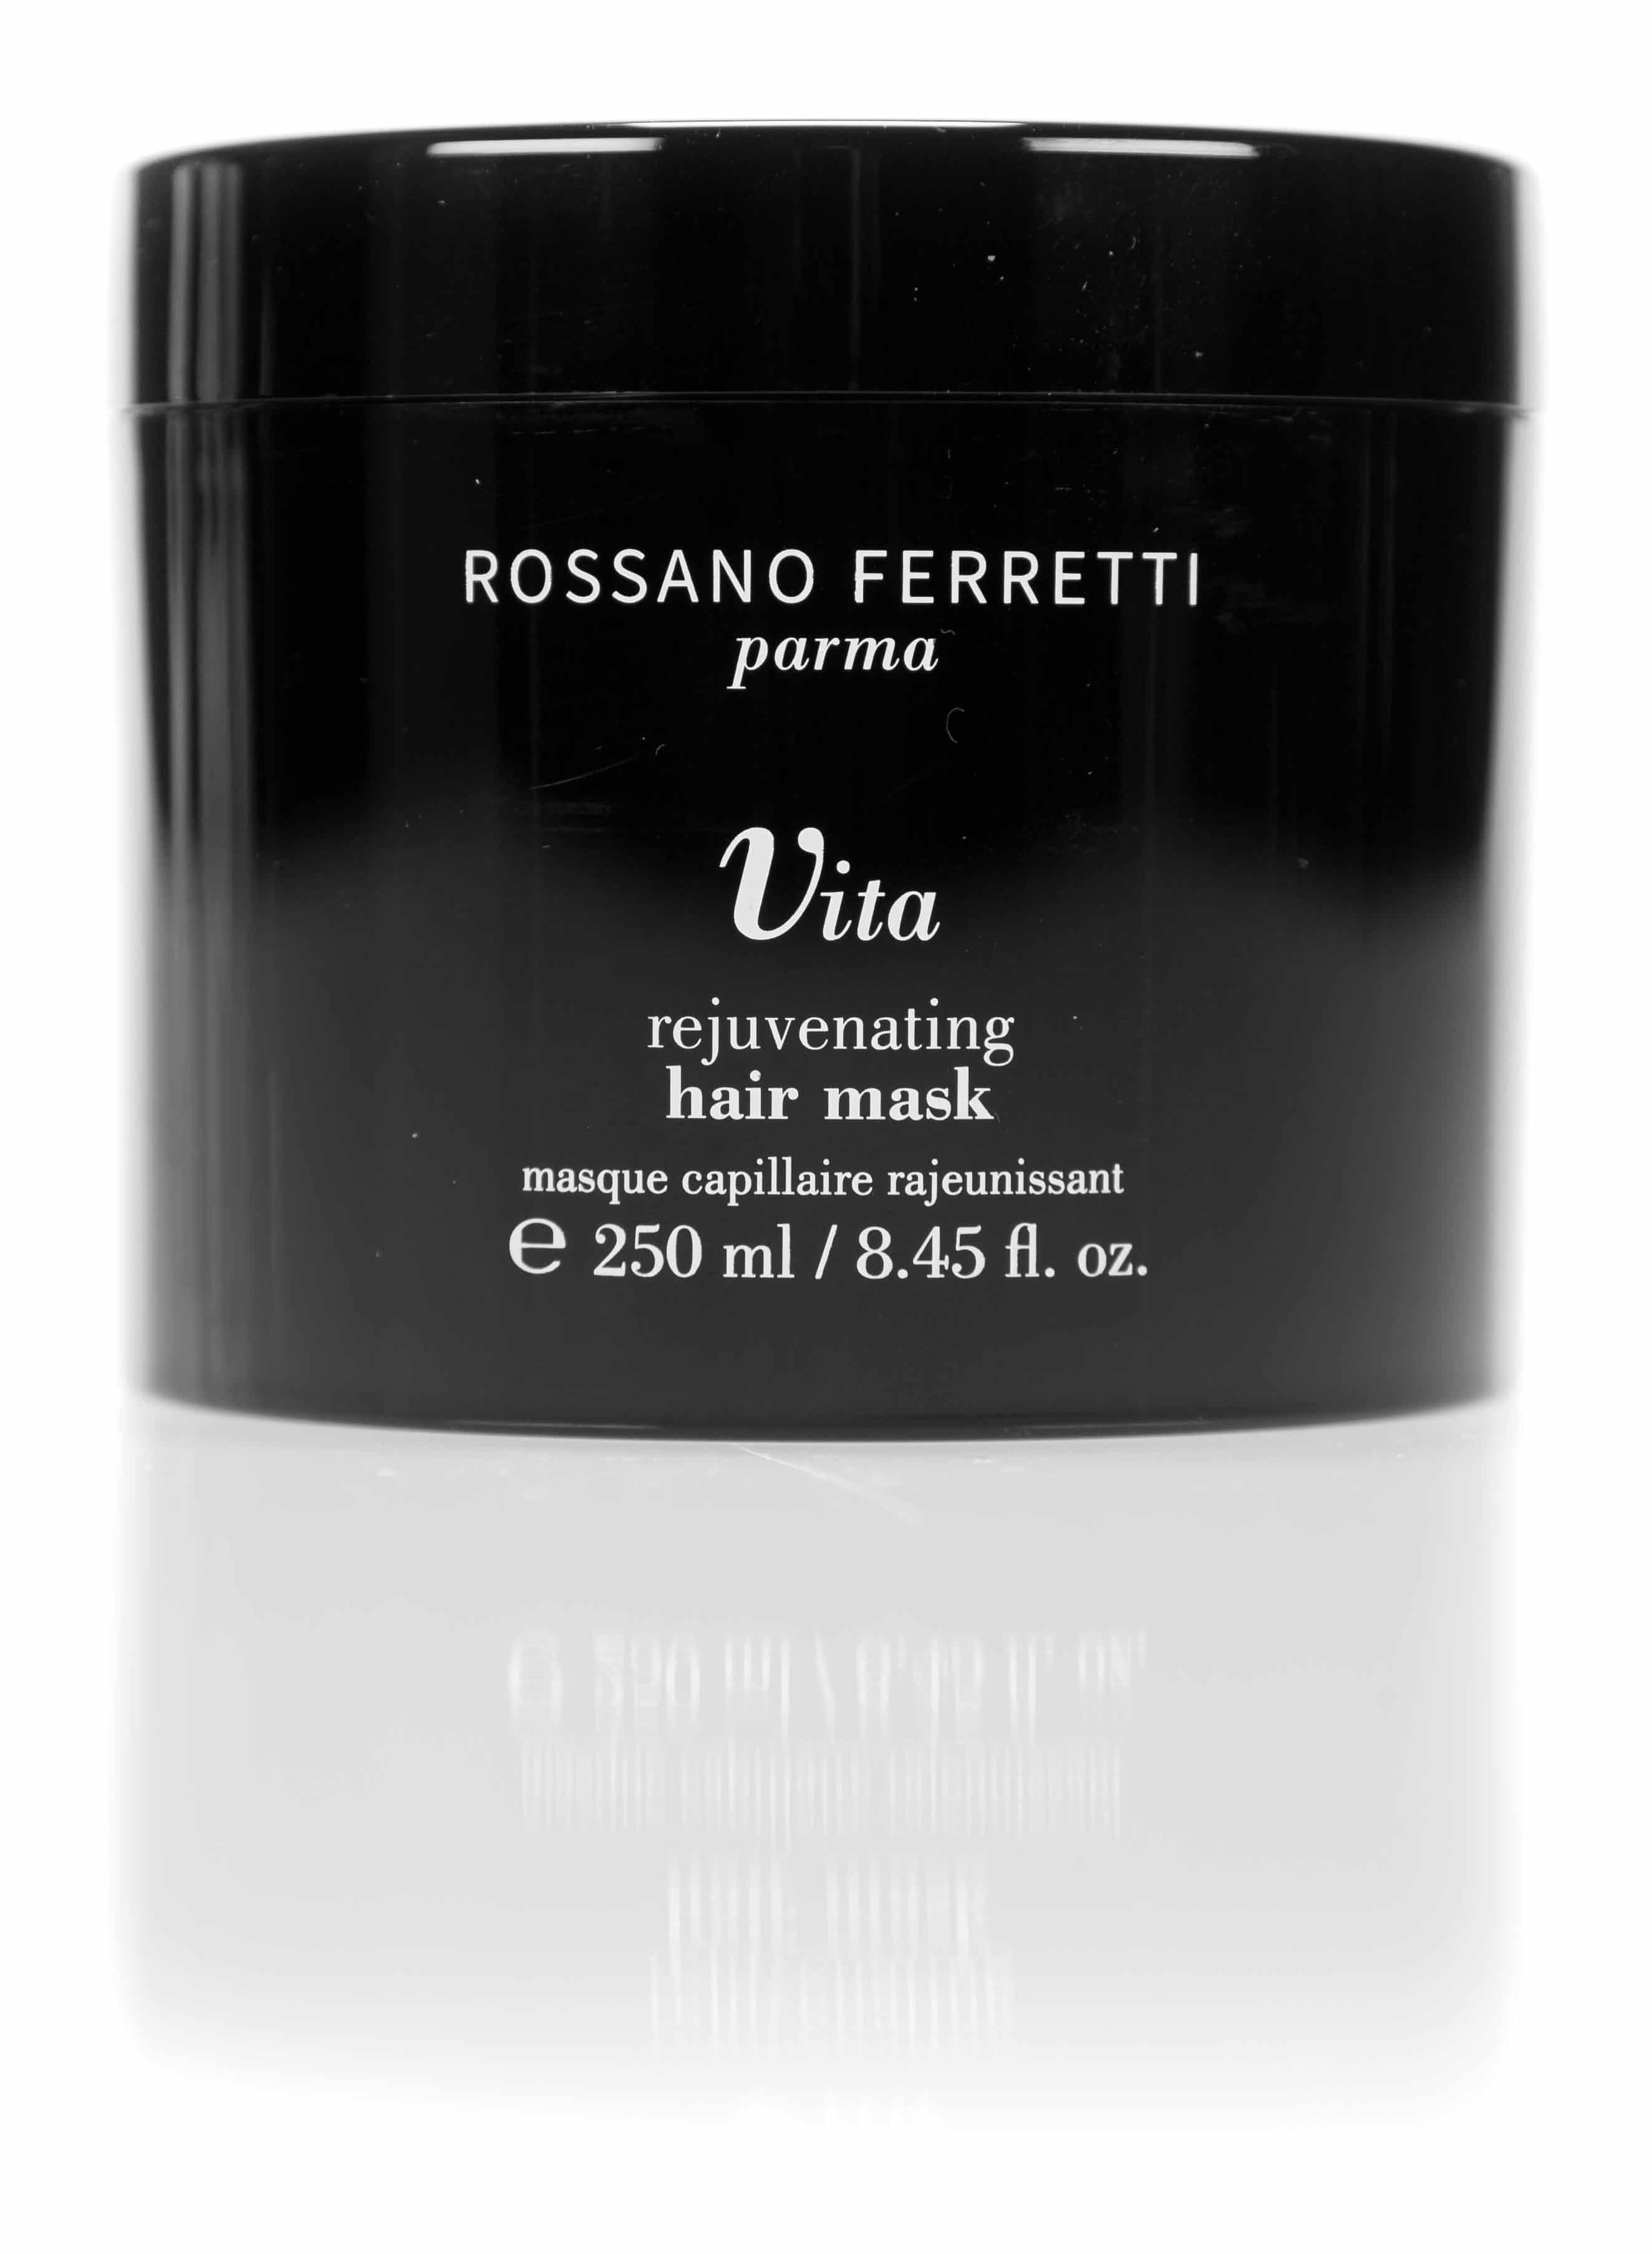 Rossano Ferretti Parma, Vita Rejuvinant Hai Mask: la maschera per capelli forti e sani dagli ingredienti naturali